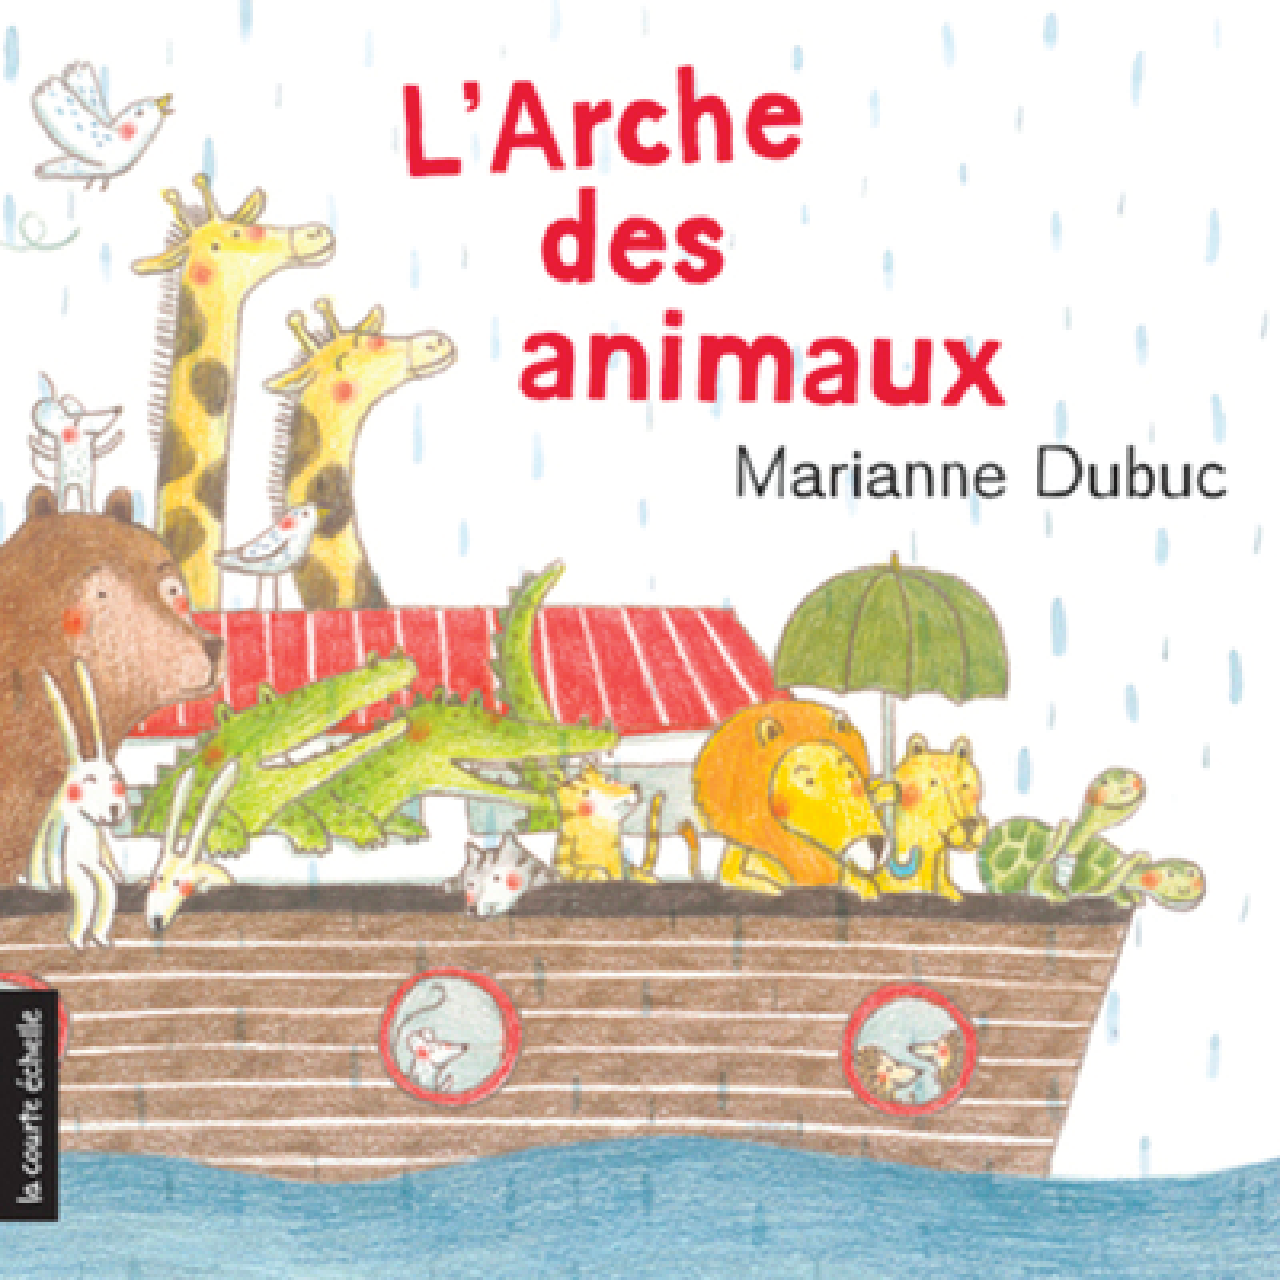 L’arche des animaux par Marianne Dubuc